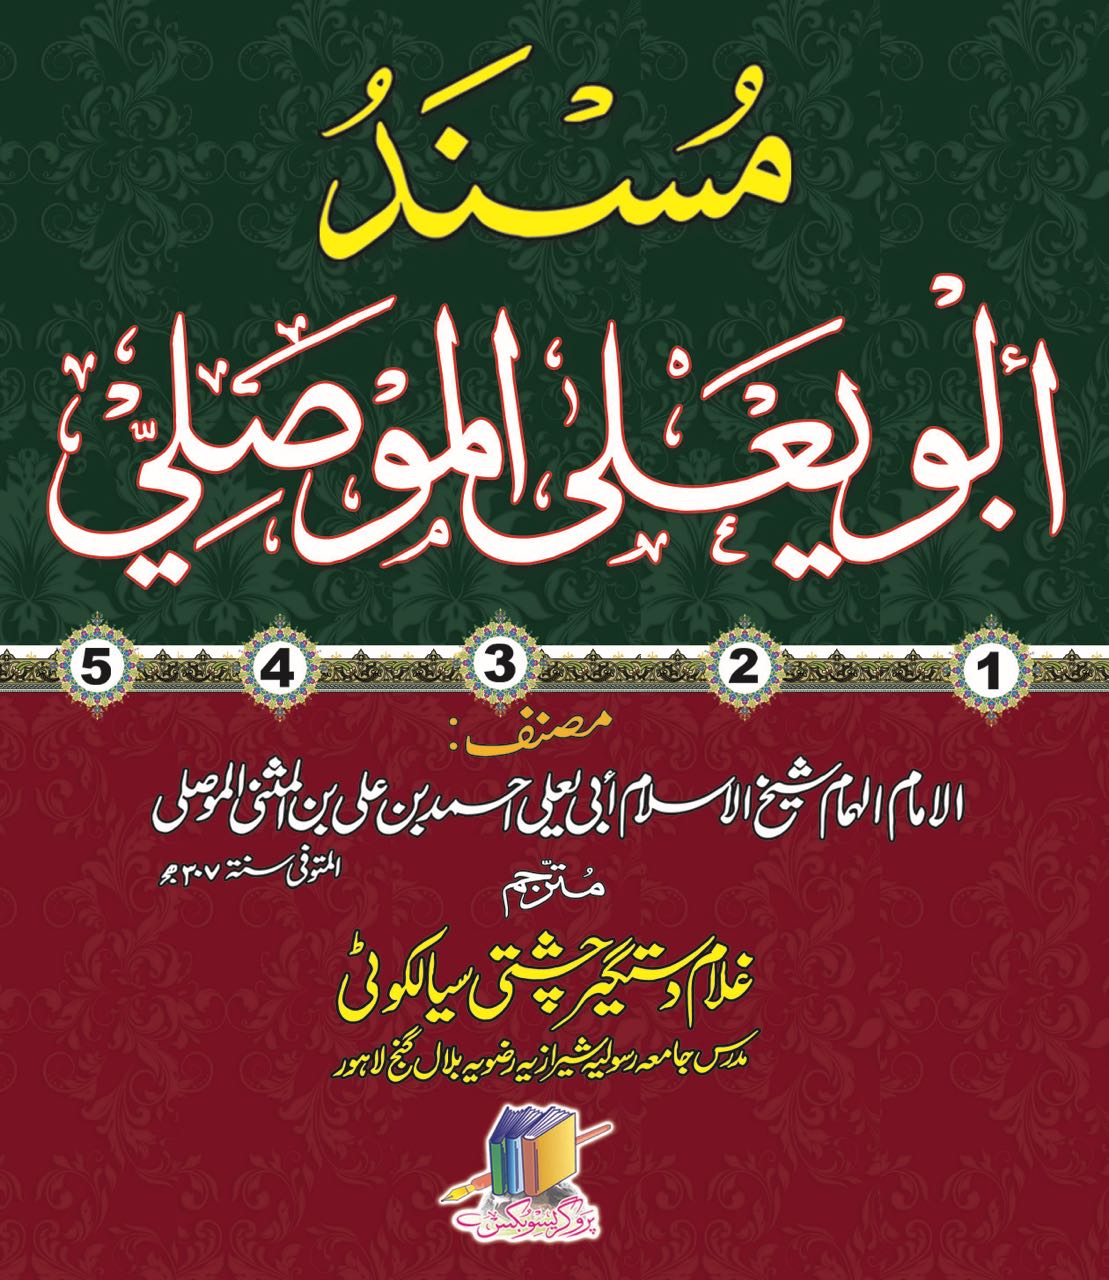 Musnad Abu Ya’la Al Musili 5 Vol Urdu – مسند ابو یعلیٰ الموصلی